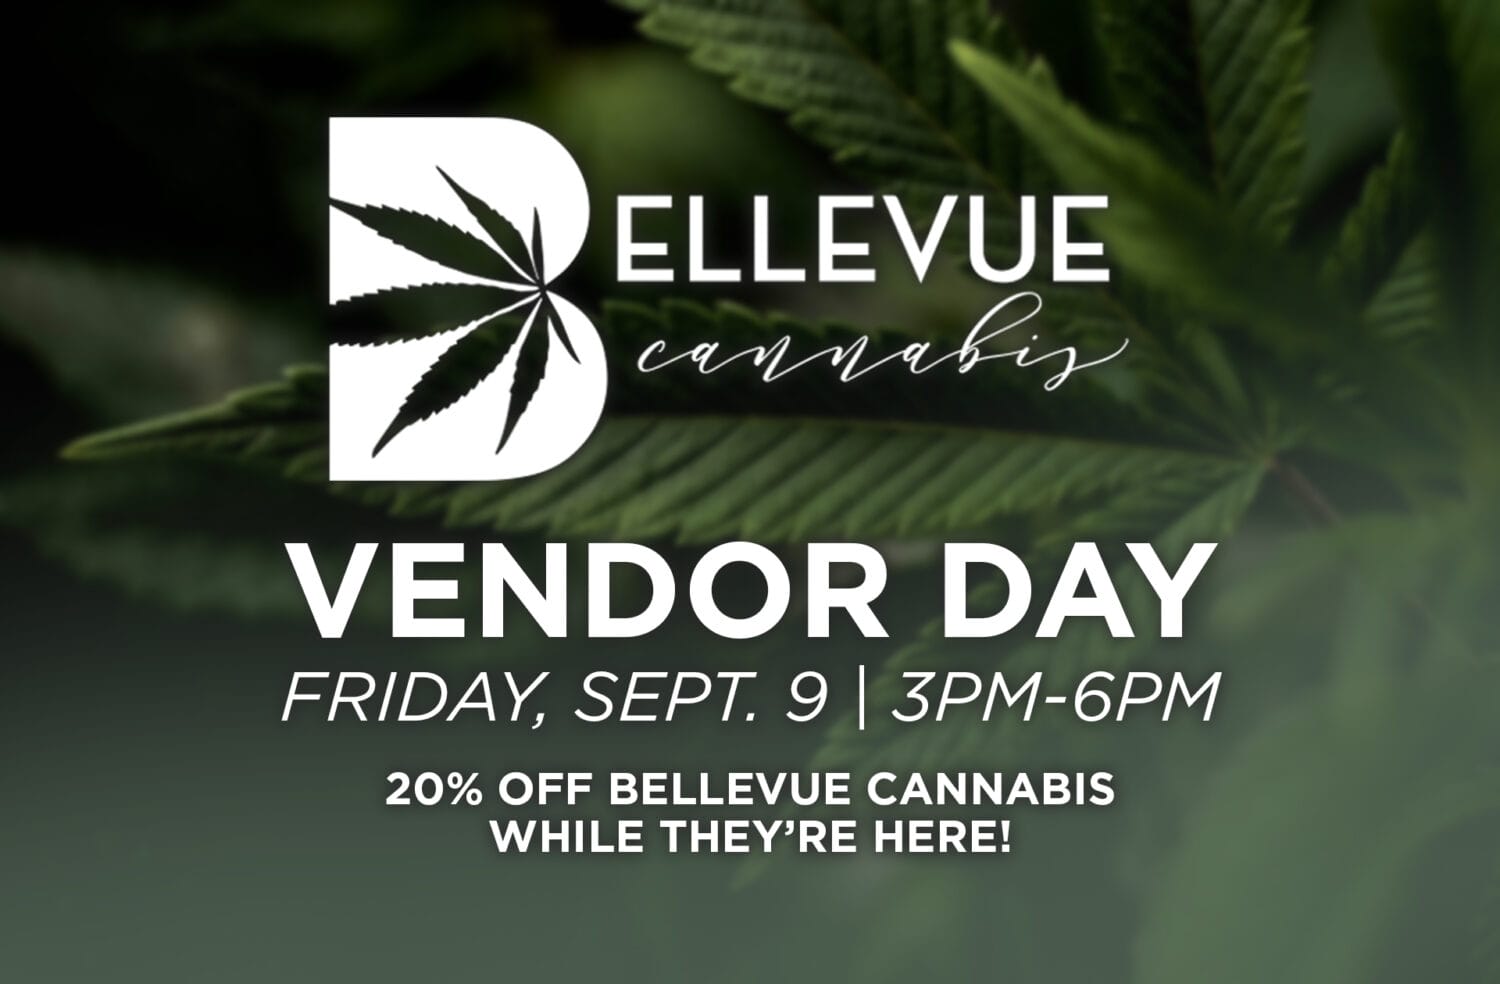 Bellevue Vendor Day Announcement